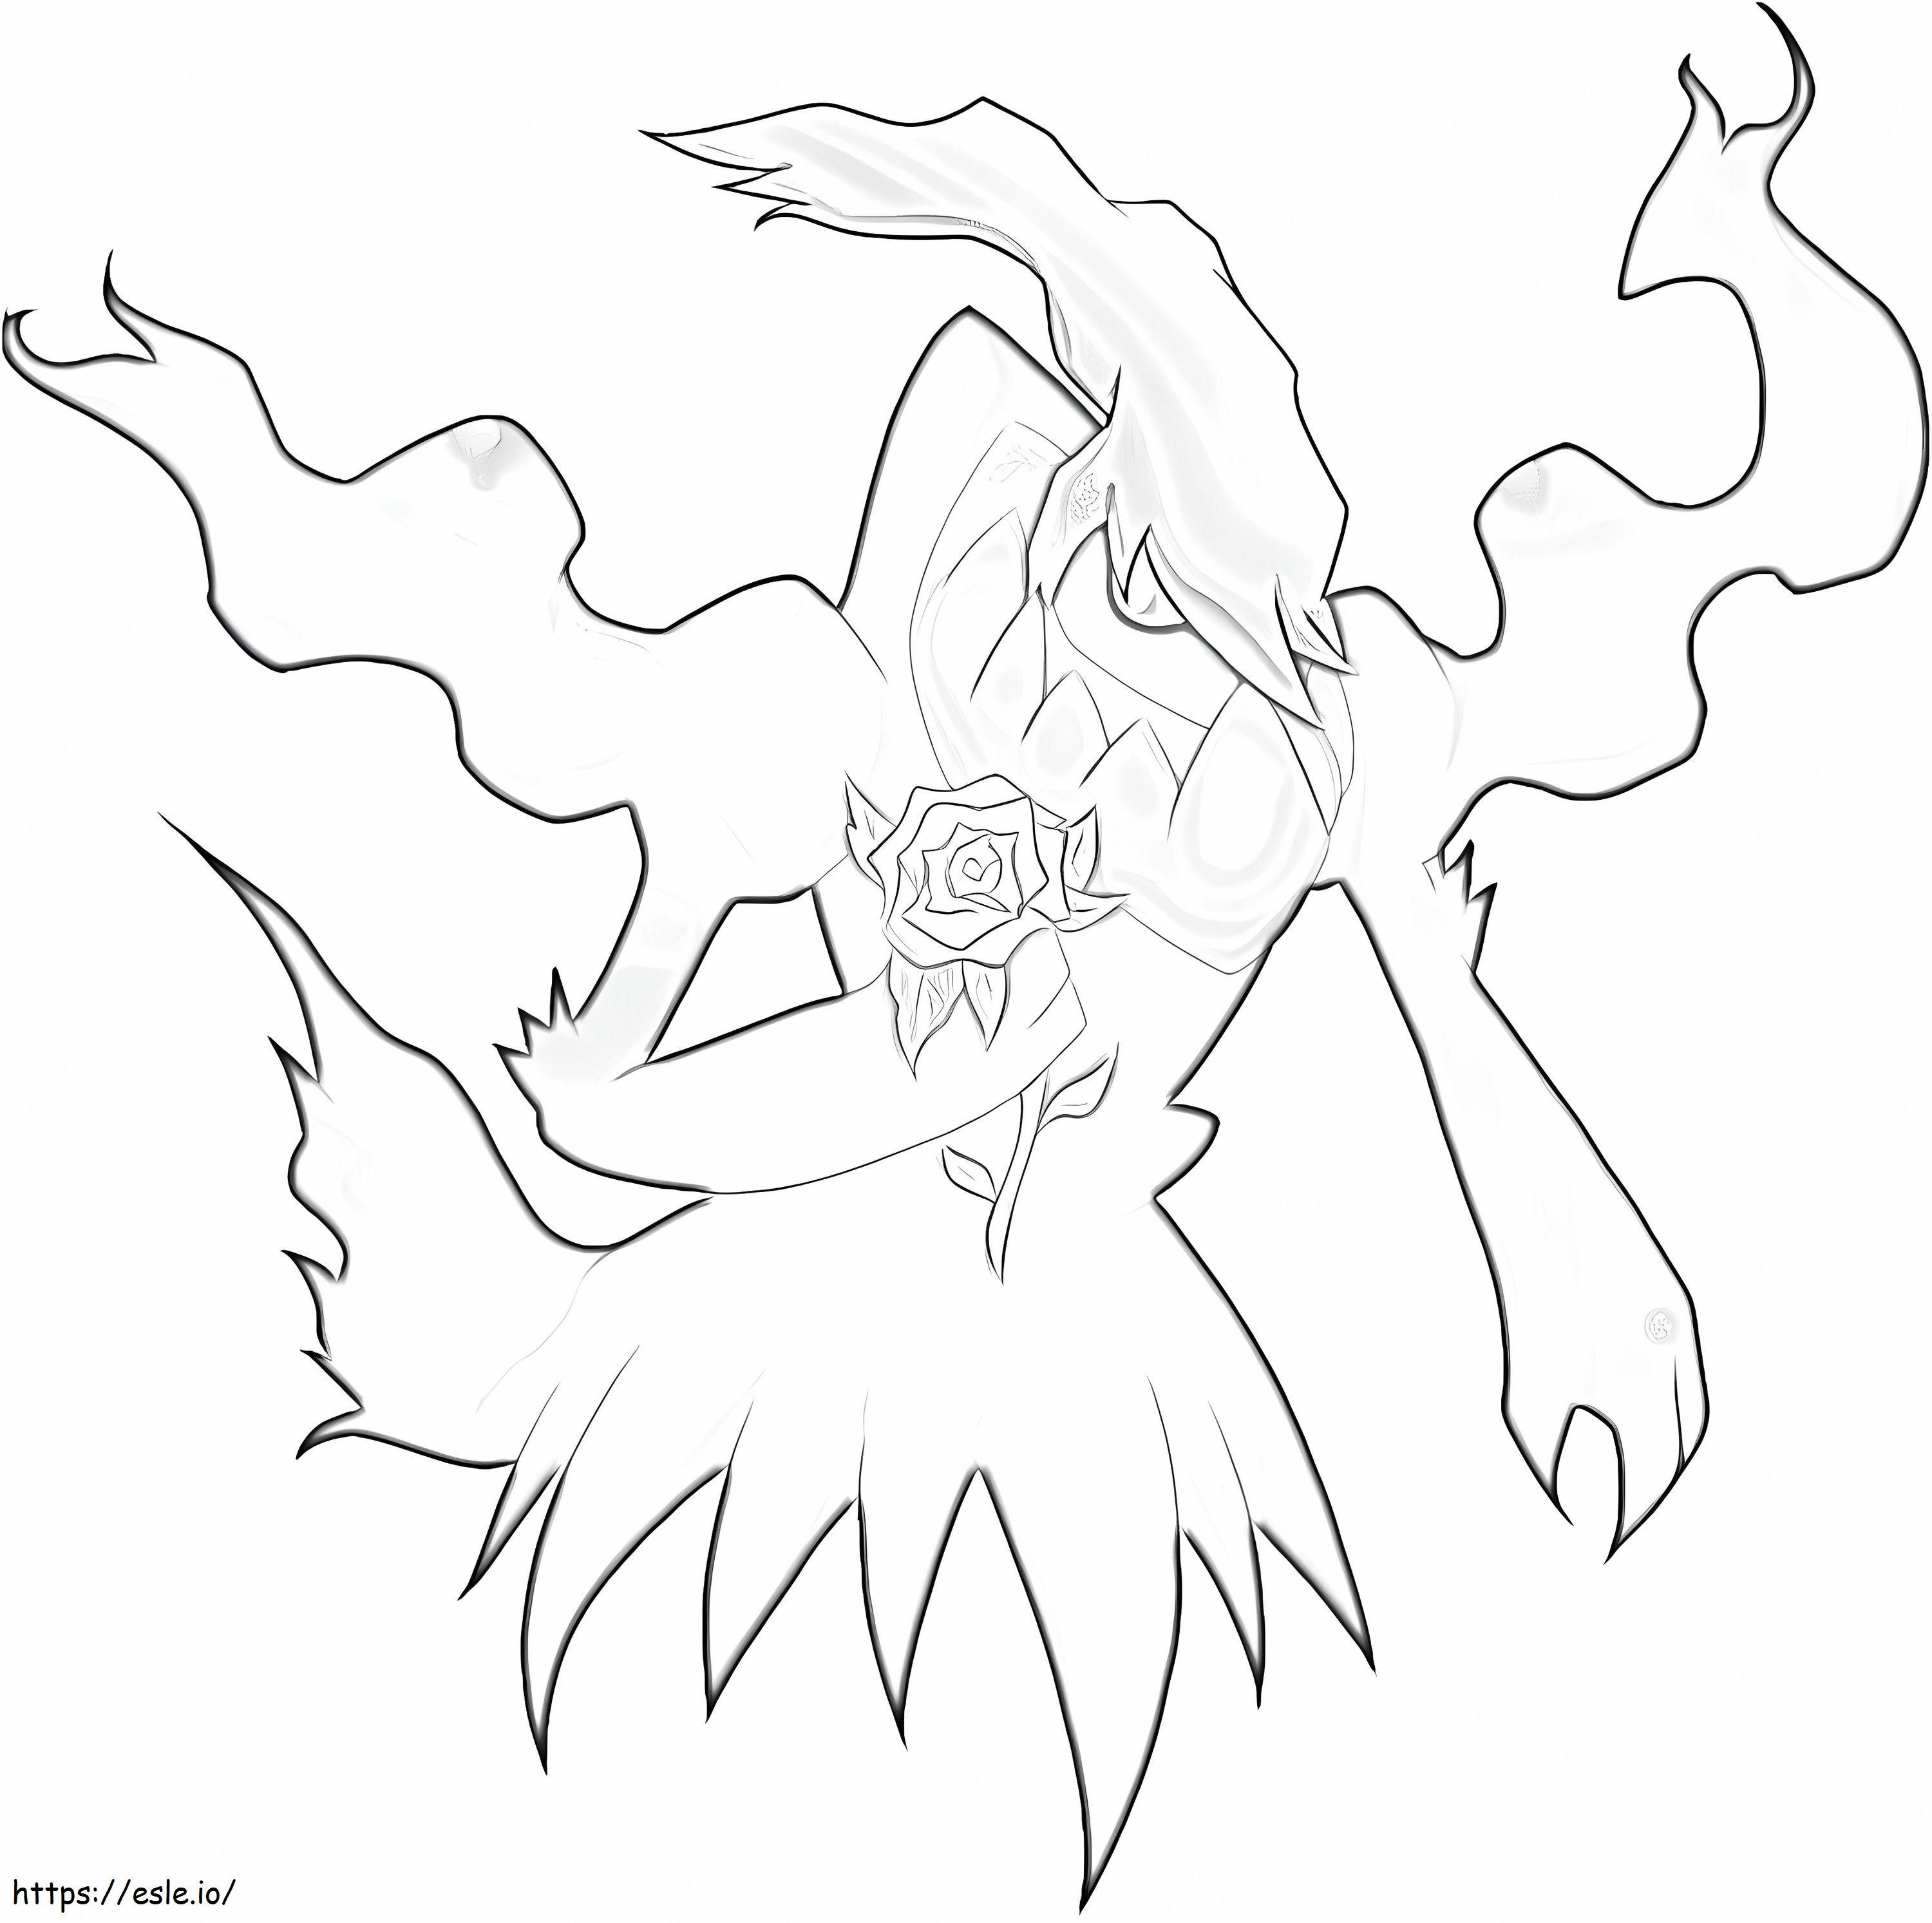 Coloriage Pokemon Darkrai 4 à imprimer dessin